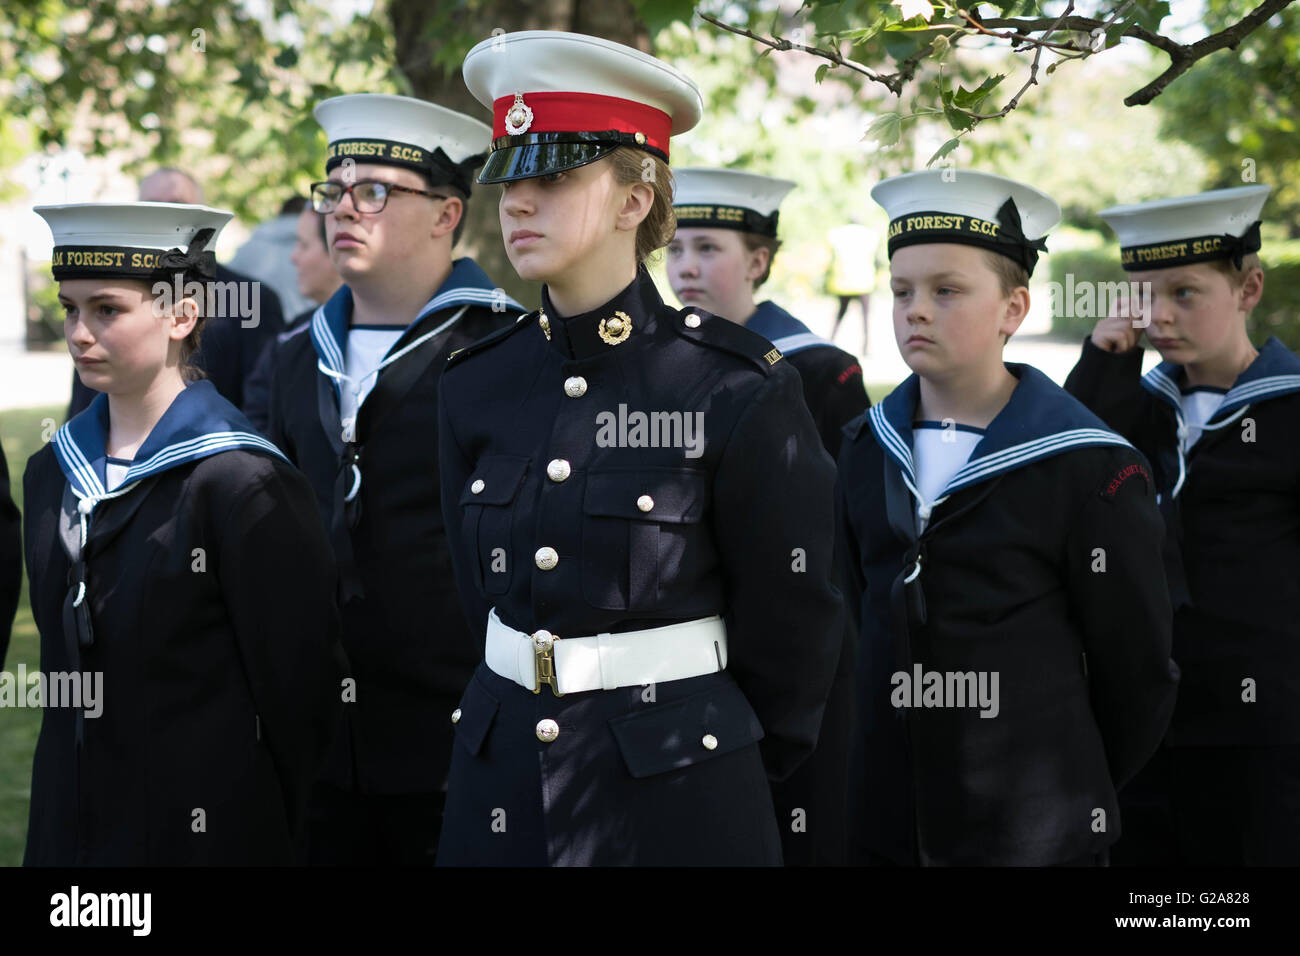 Royal Navy Marines